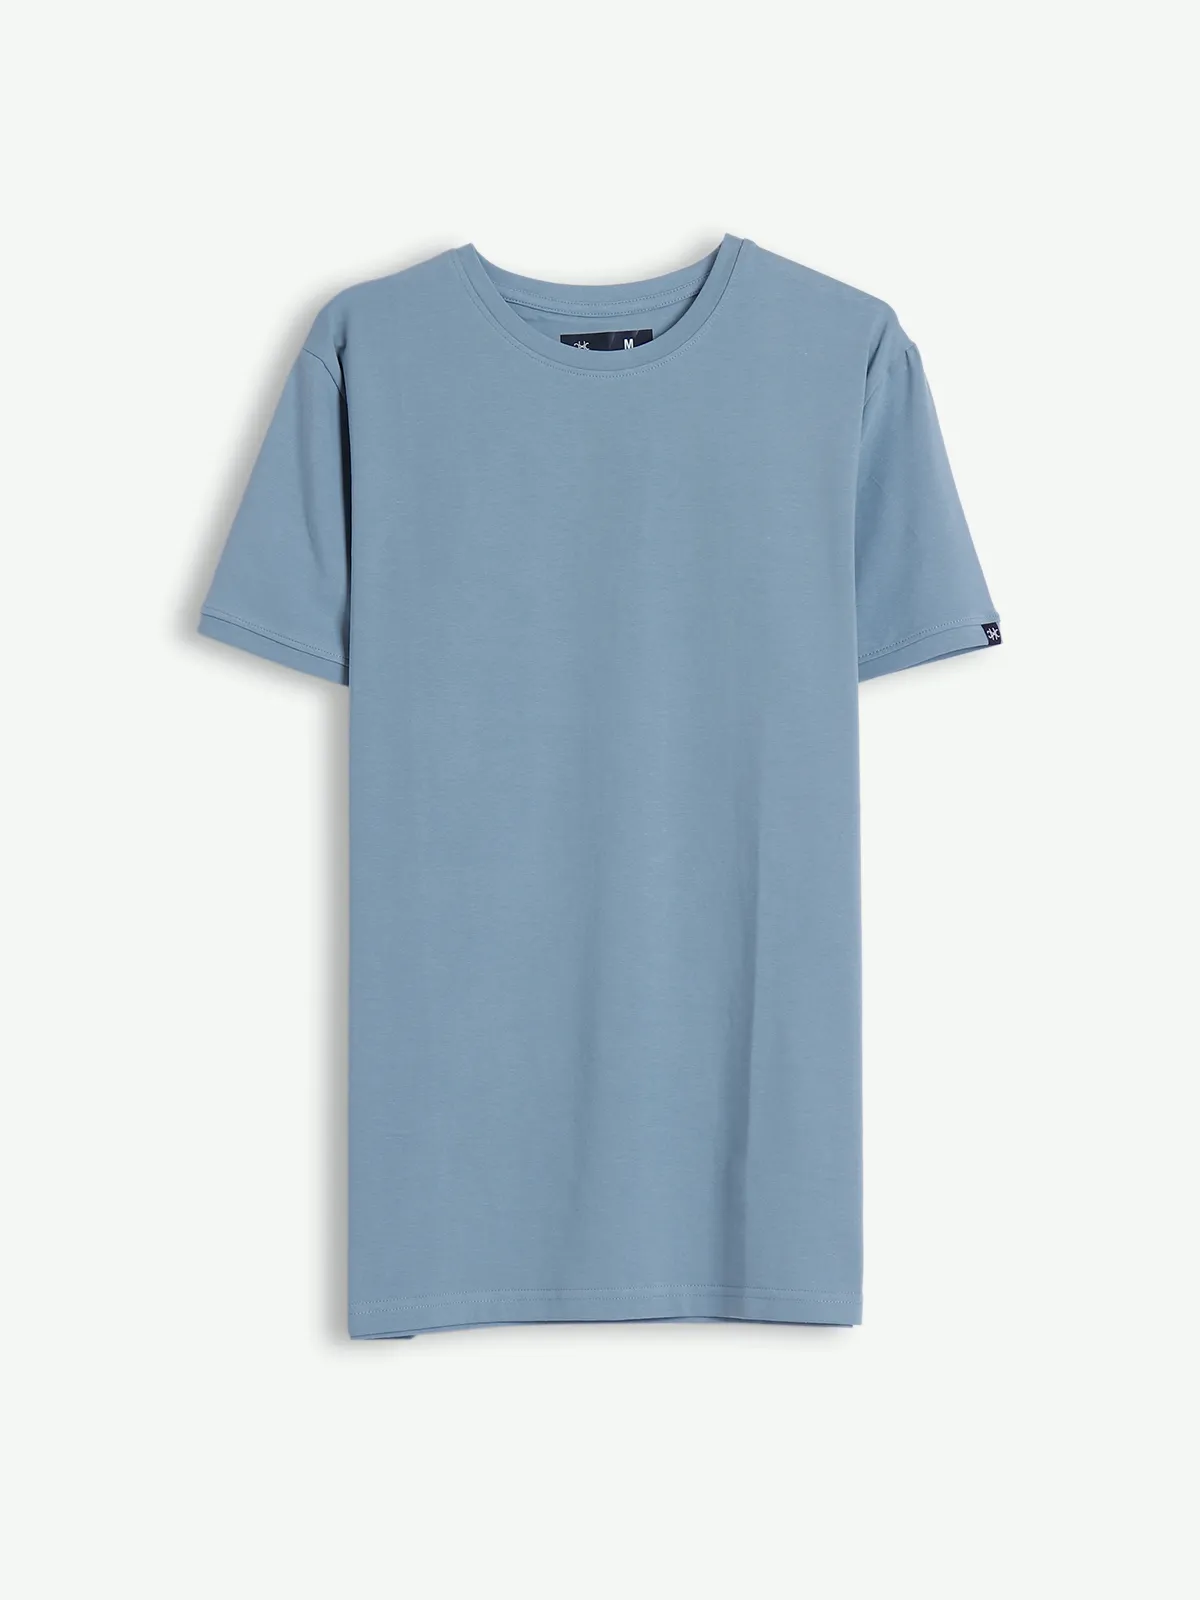 Kuch Kuch stone blue cotton t shirt